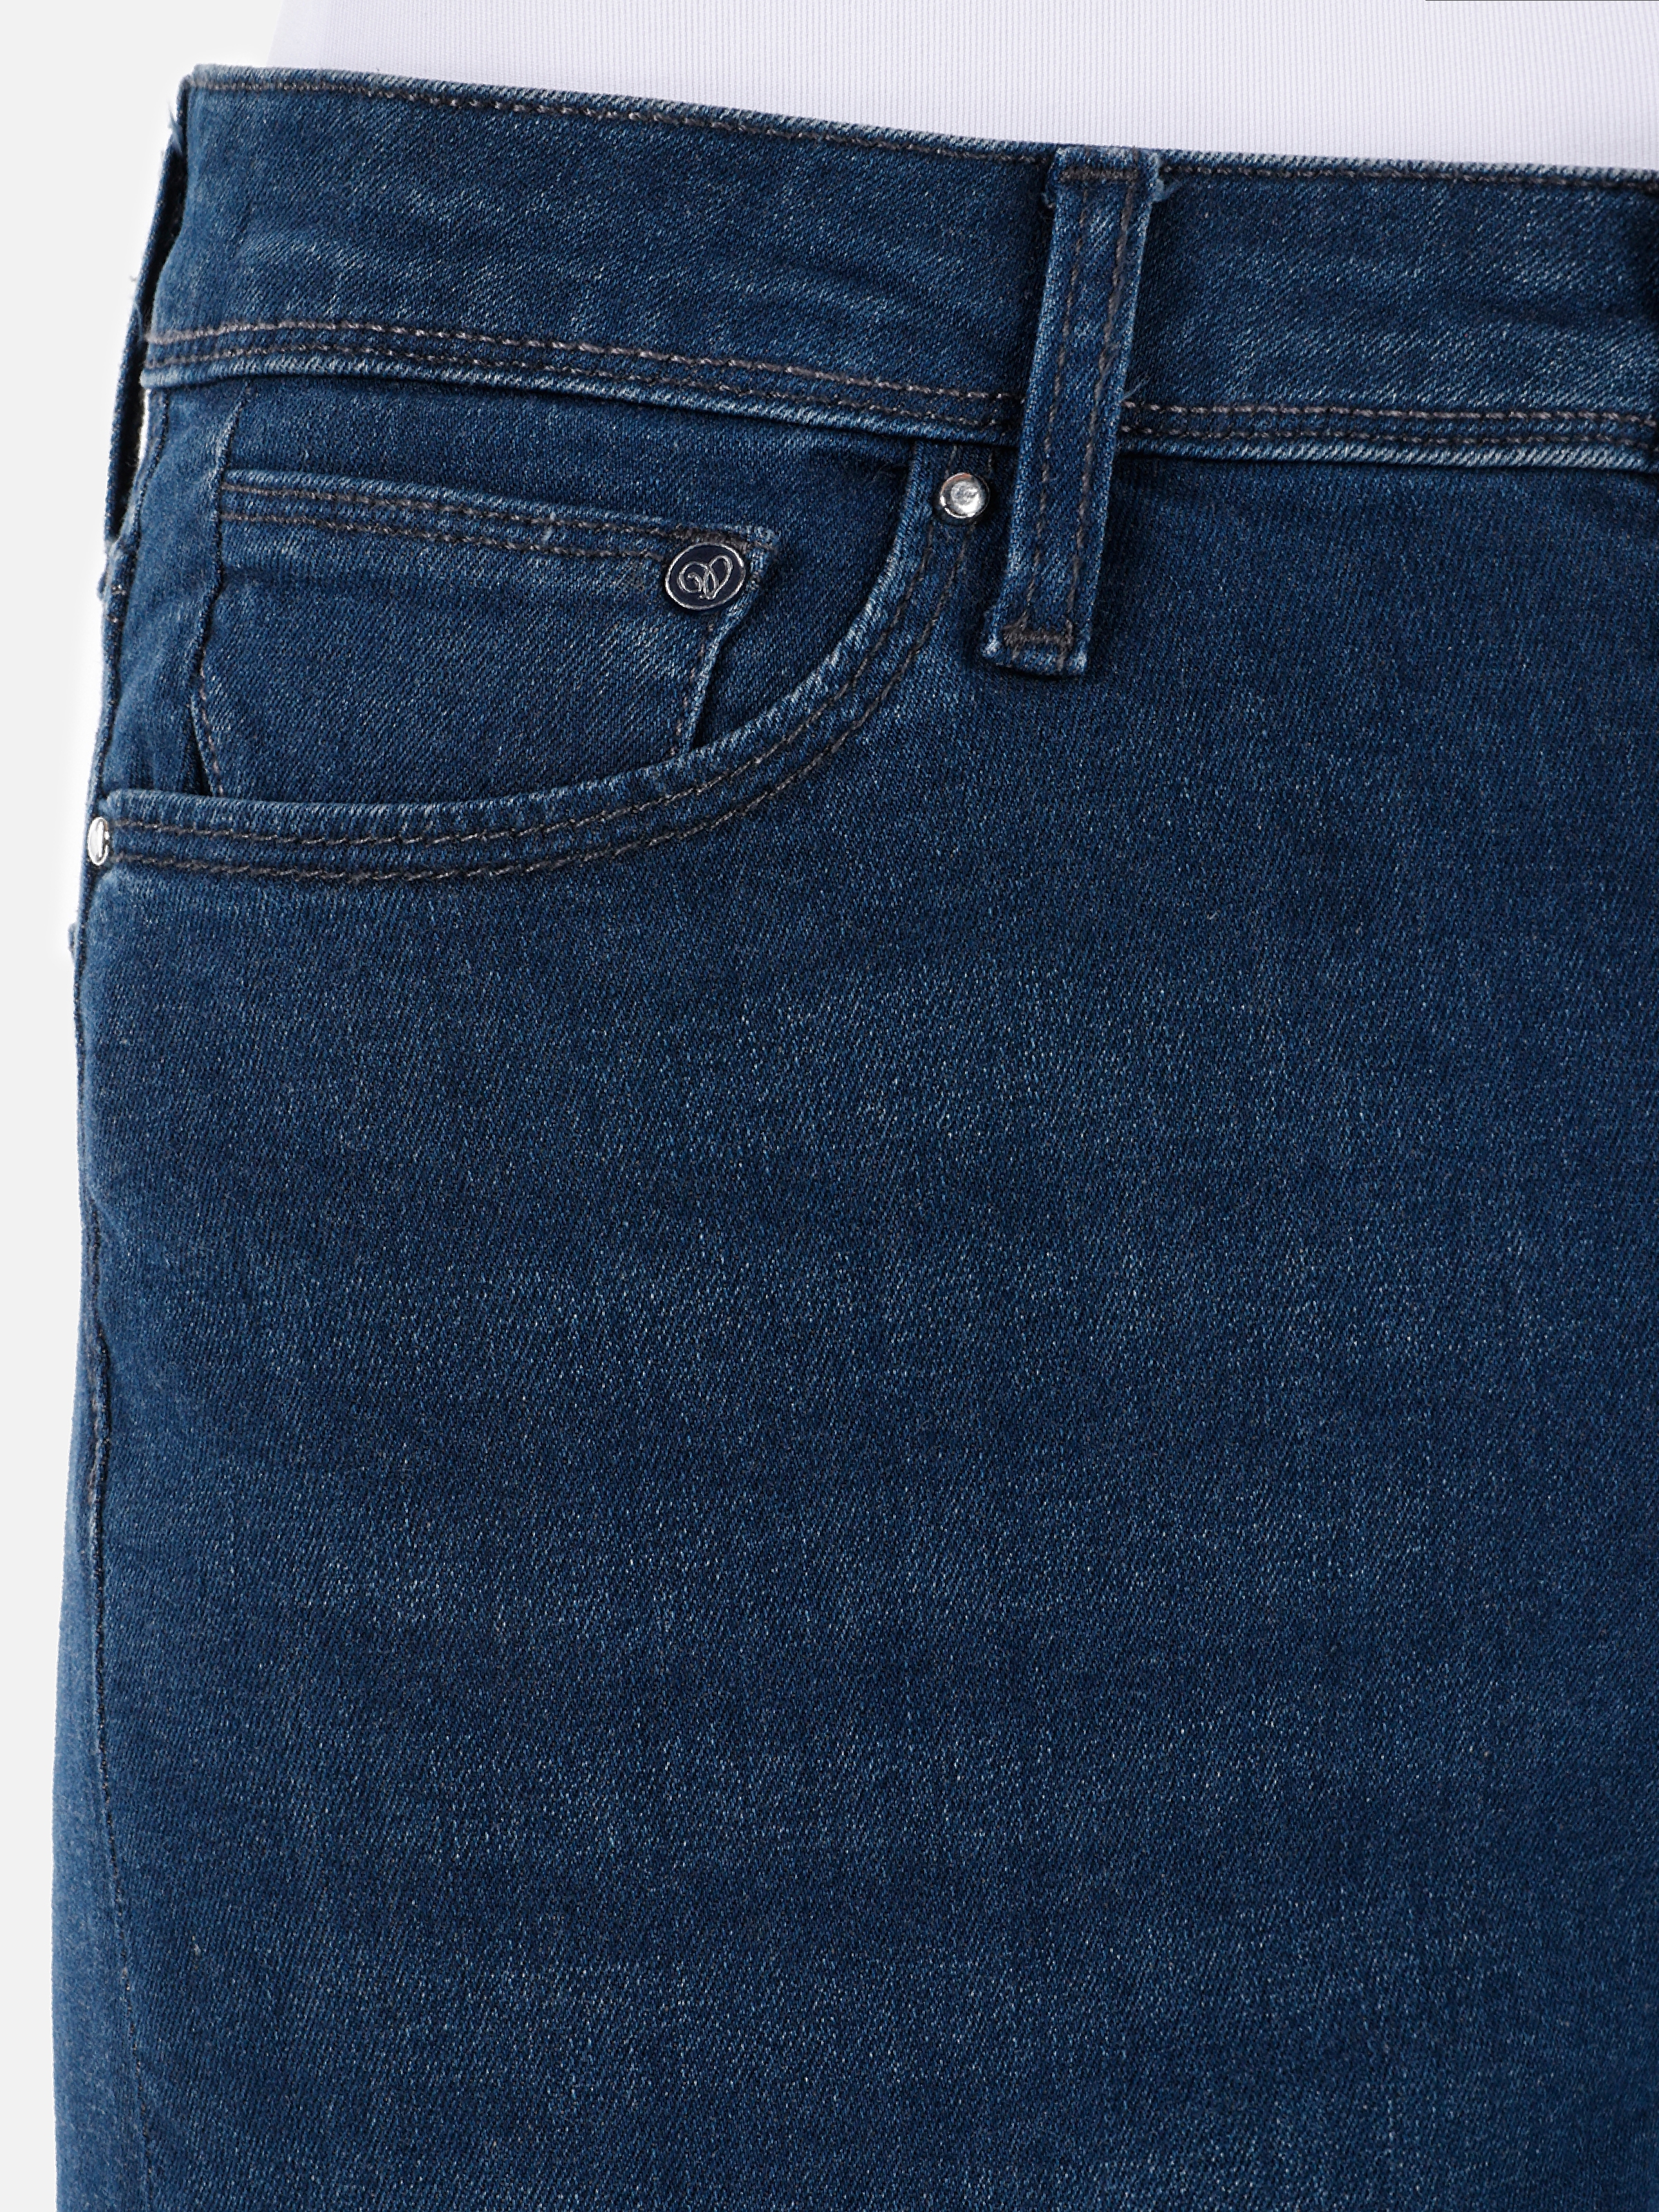 Afișați detalii pentru Pantaloni De Dama Albastru inchis Slim Fit 703 CARLA 